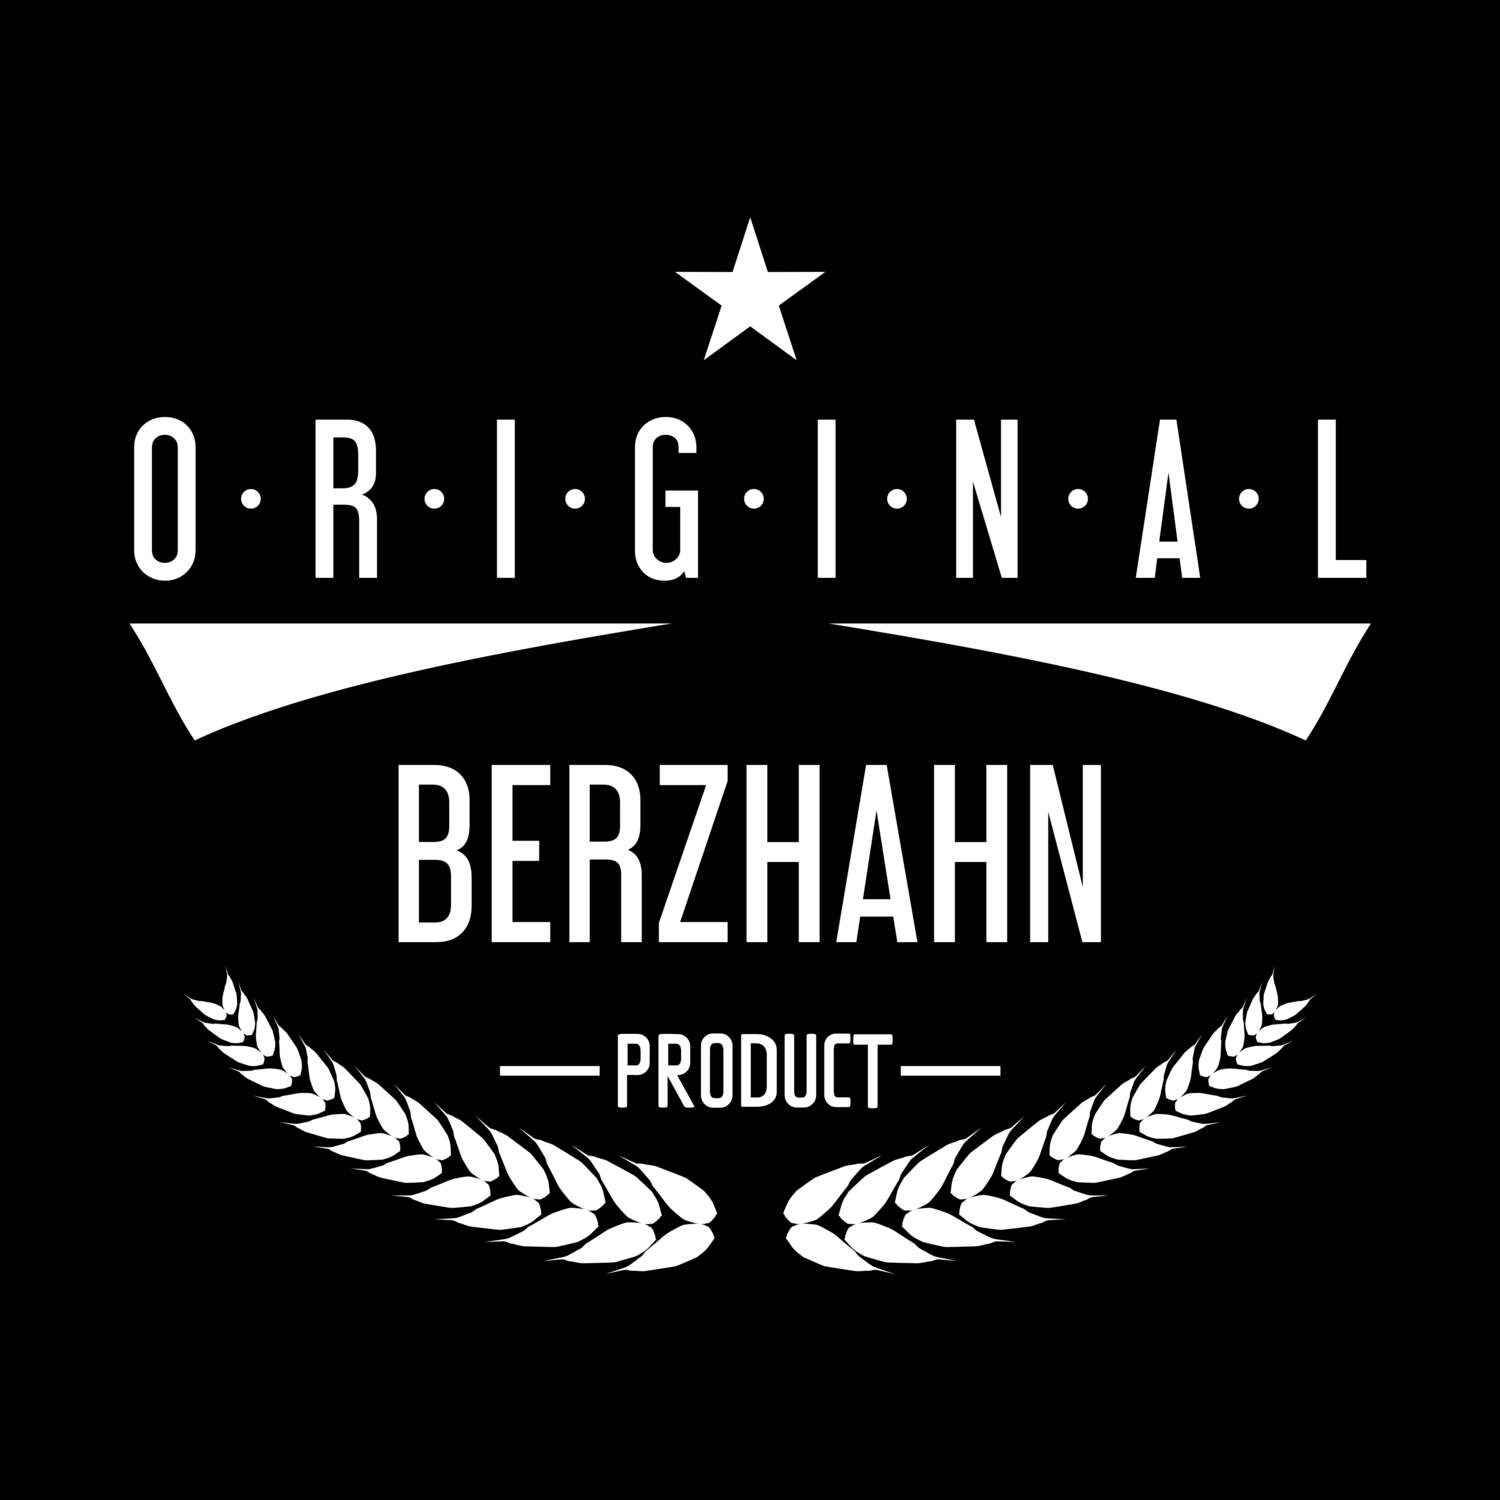 Berzhahn T-Shirt »Original Product«